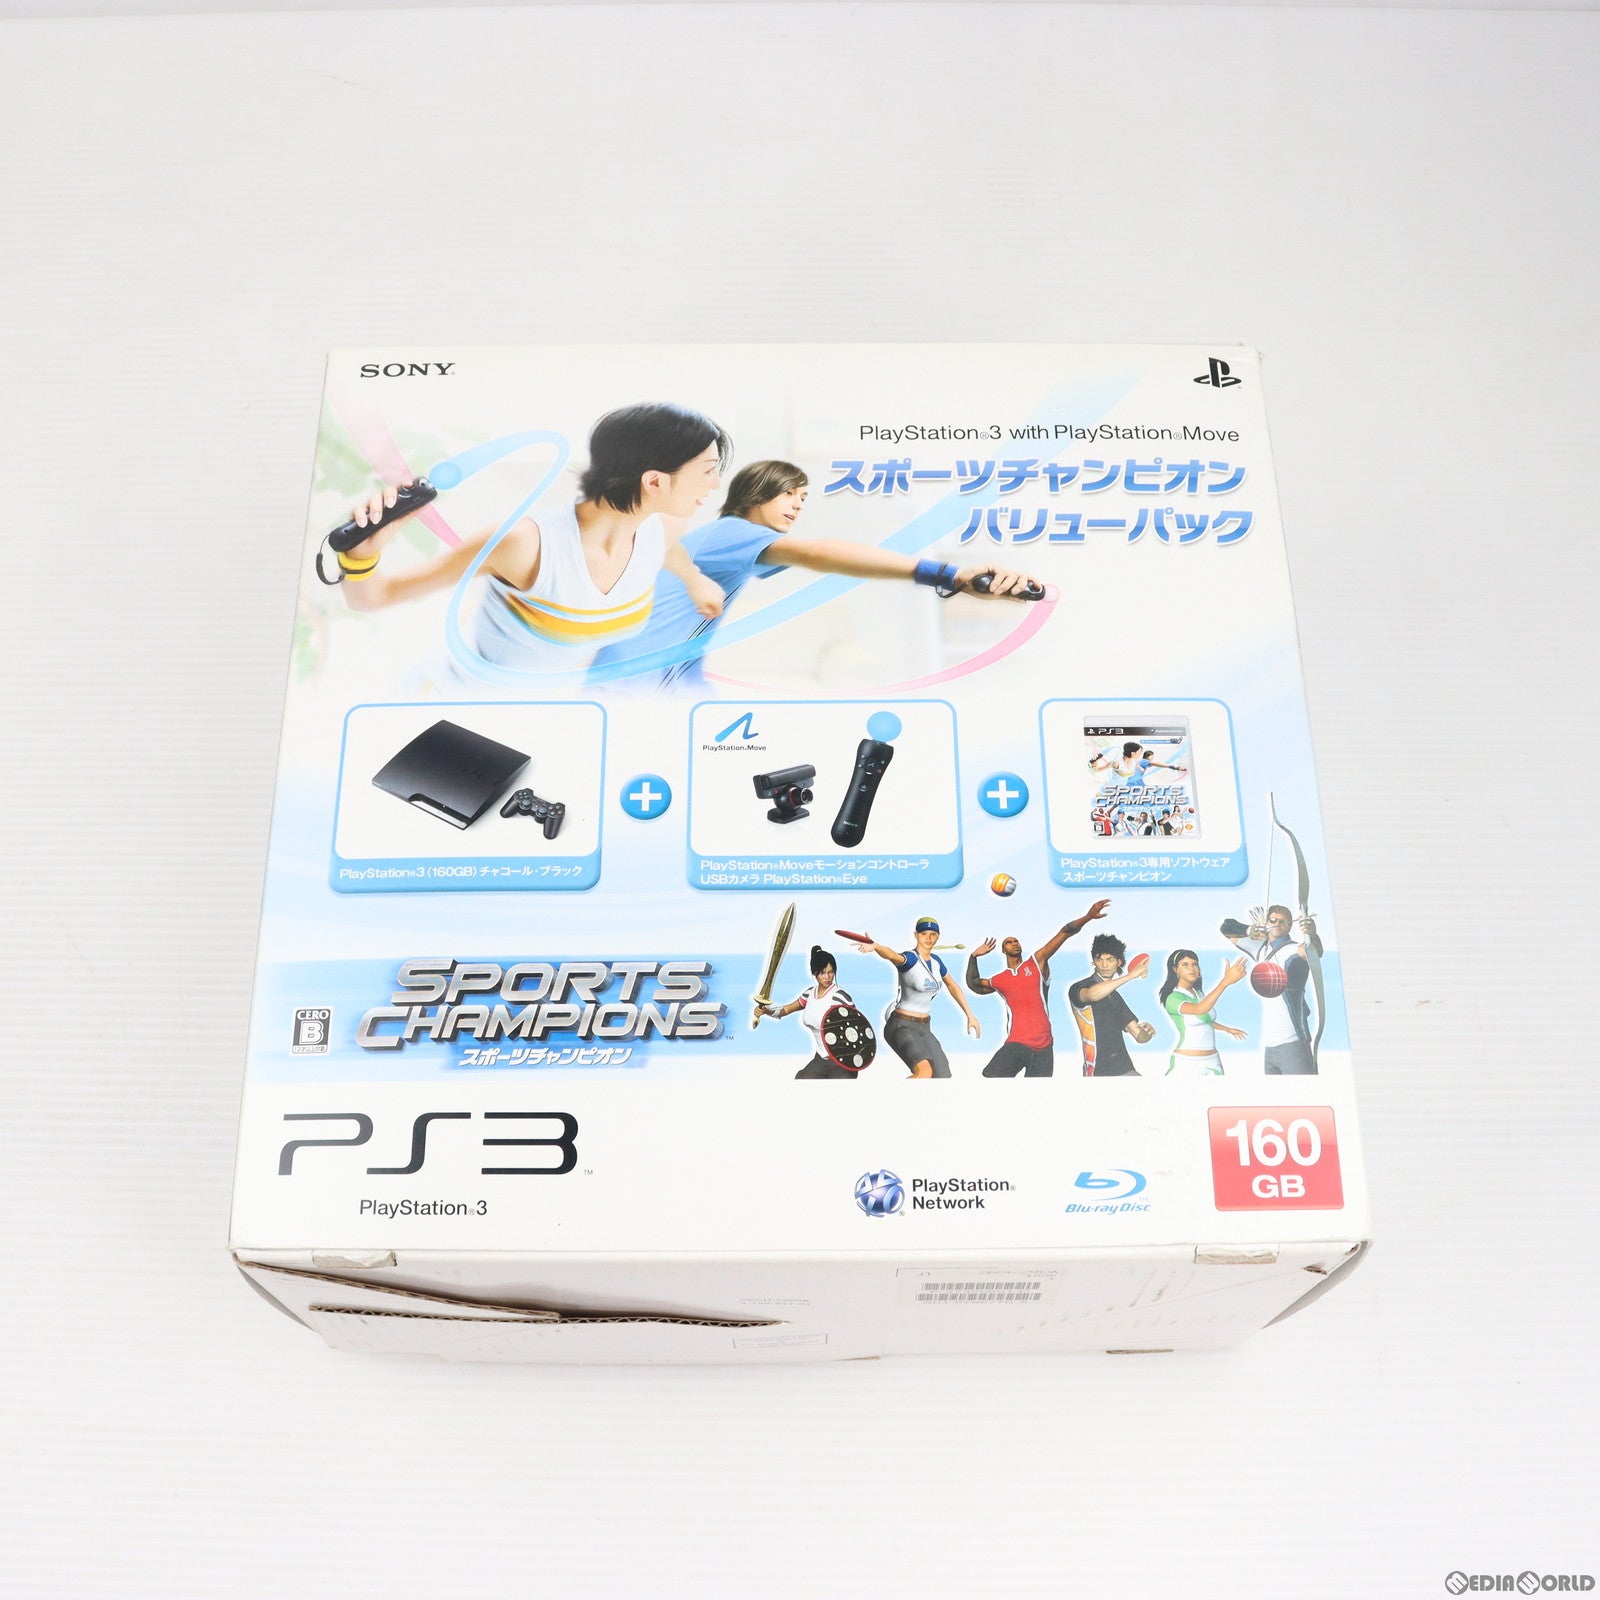 【中古即納】[本体][PS3]PlayStation3 with PlayStation Move スポーツチャンピオン バリューパック チャコール・ブラック 160GB(CEJH-10015)(20101216)